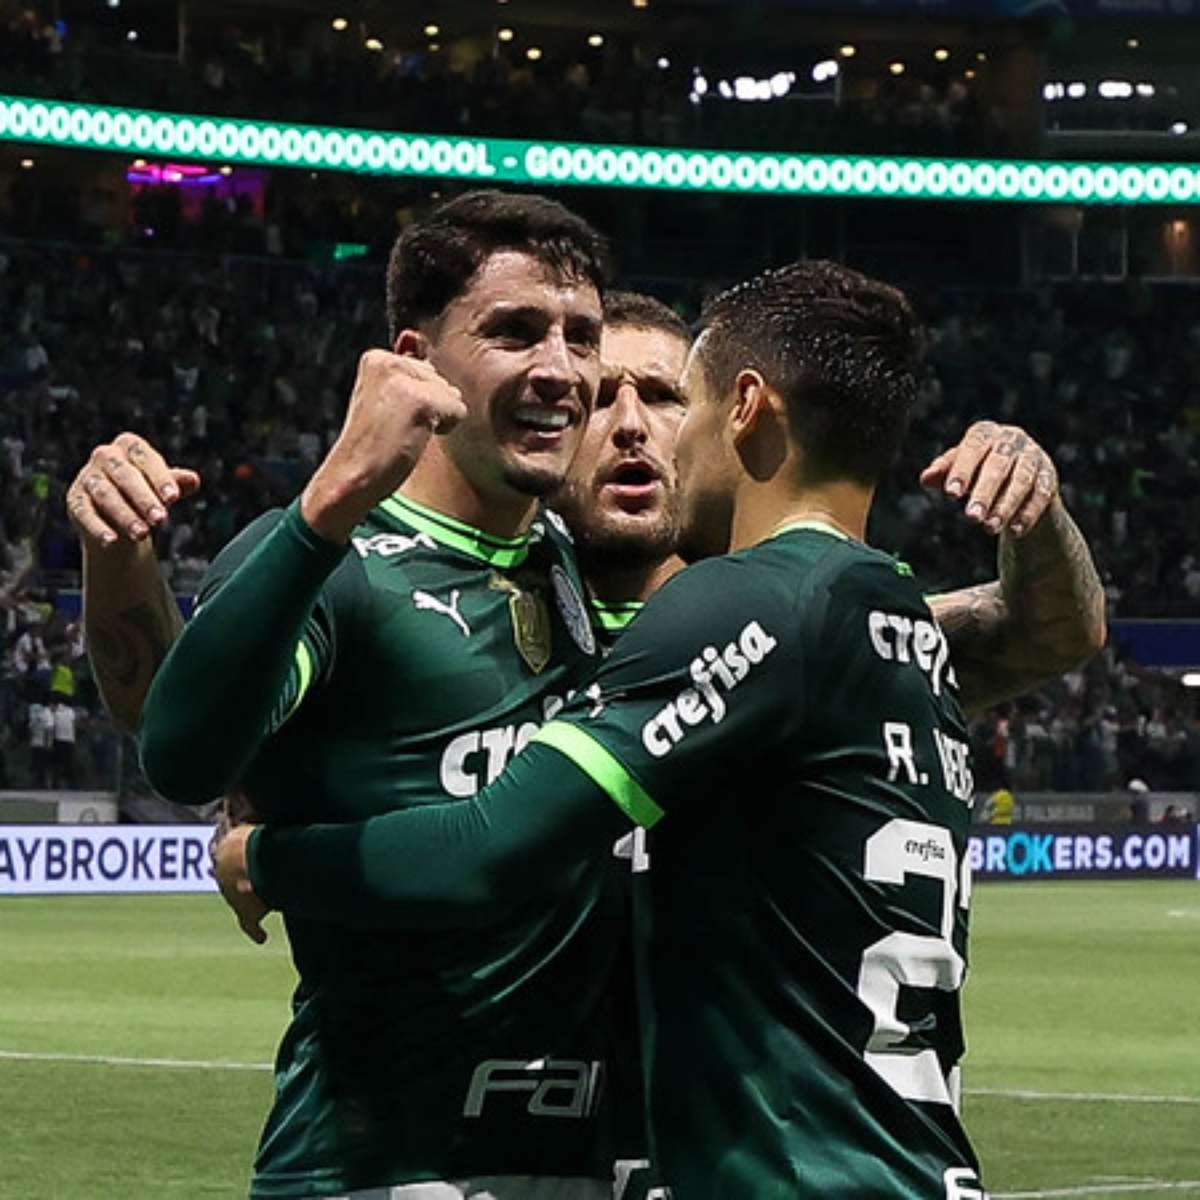 Palmeiras x Fortaleza - Prováveis escalações, onde assistir e arbitragem